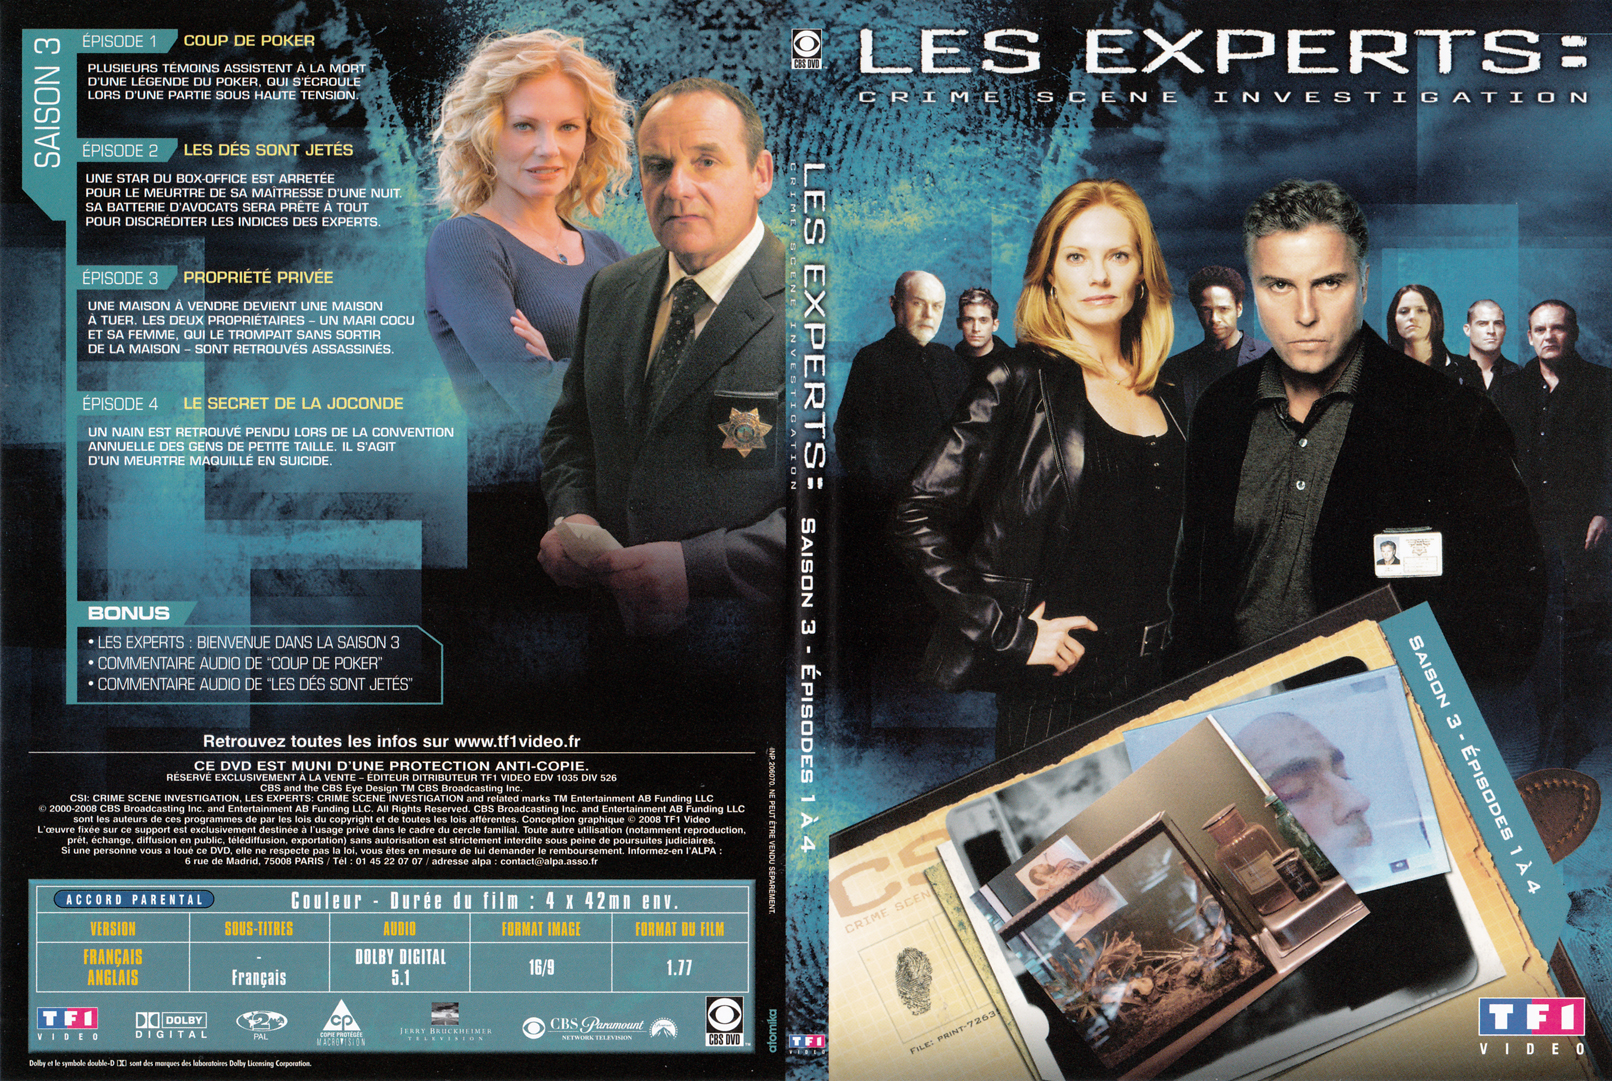 Jaquette DVD Les experts las vegas Saison 03 DVD 01 - SLIM